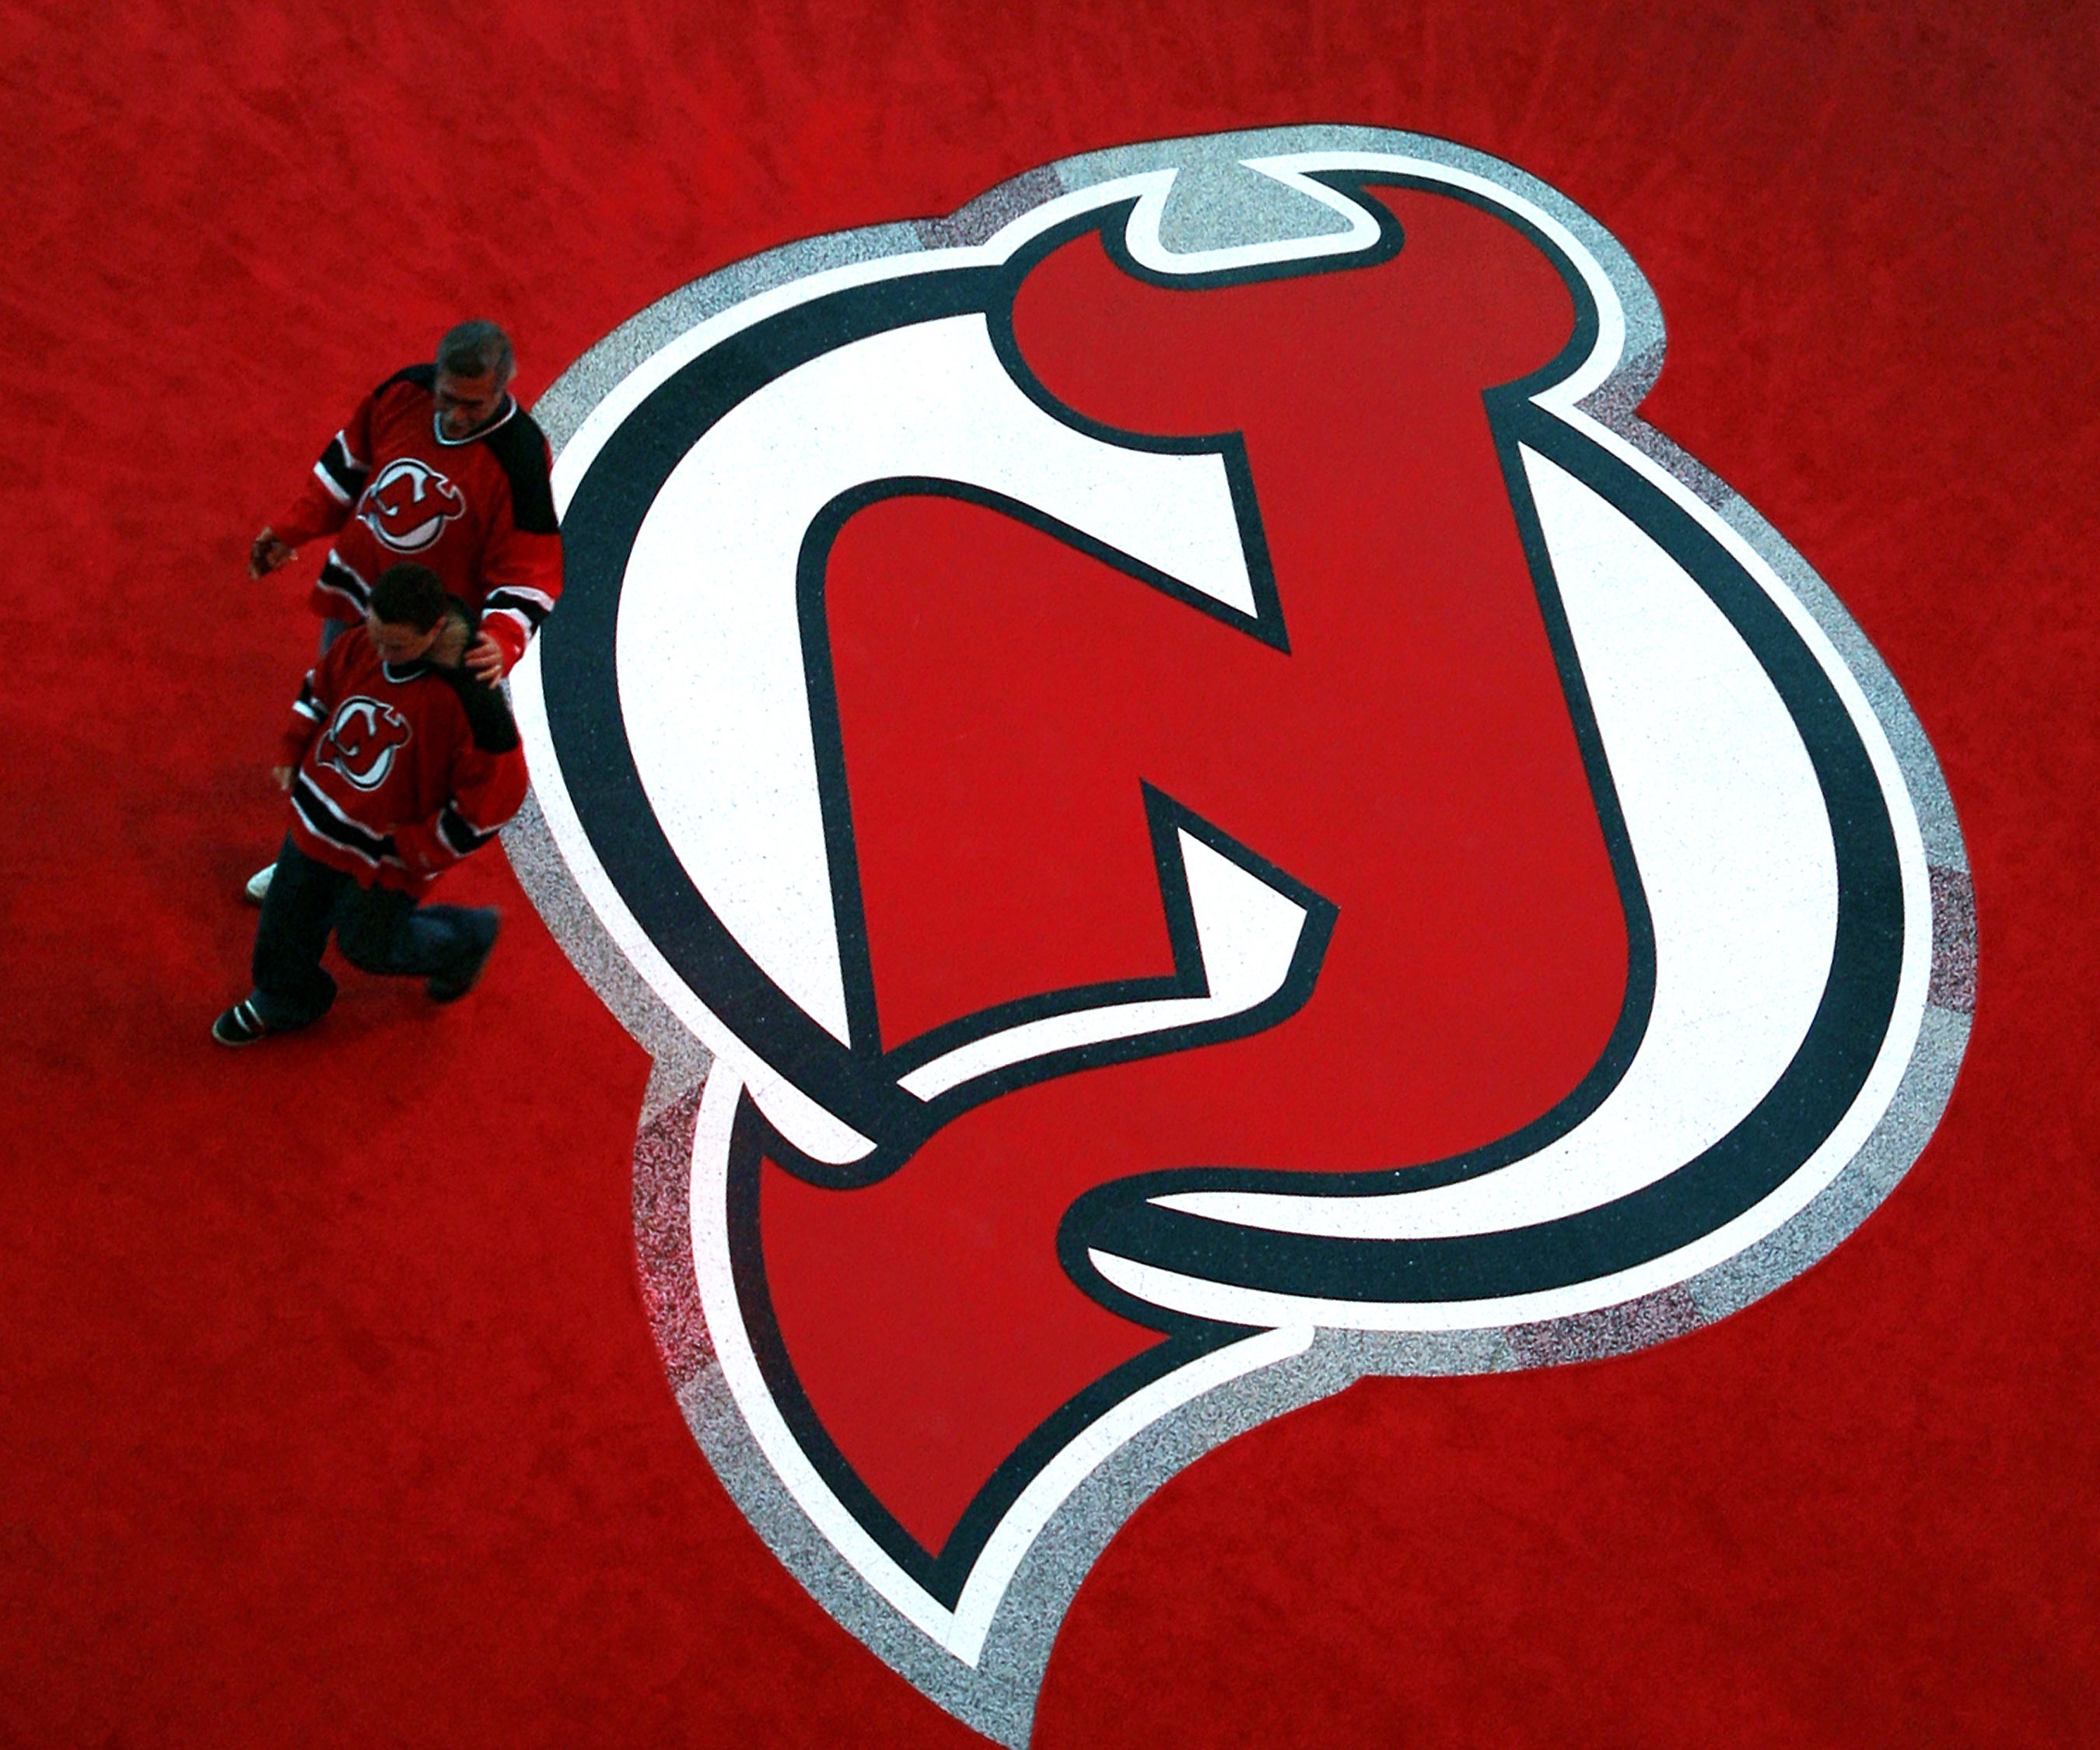 Ottawa Senators v New Jersey Devils